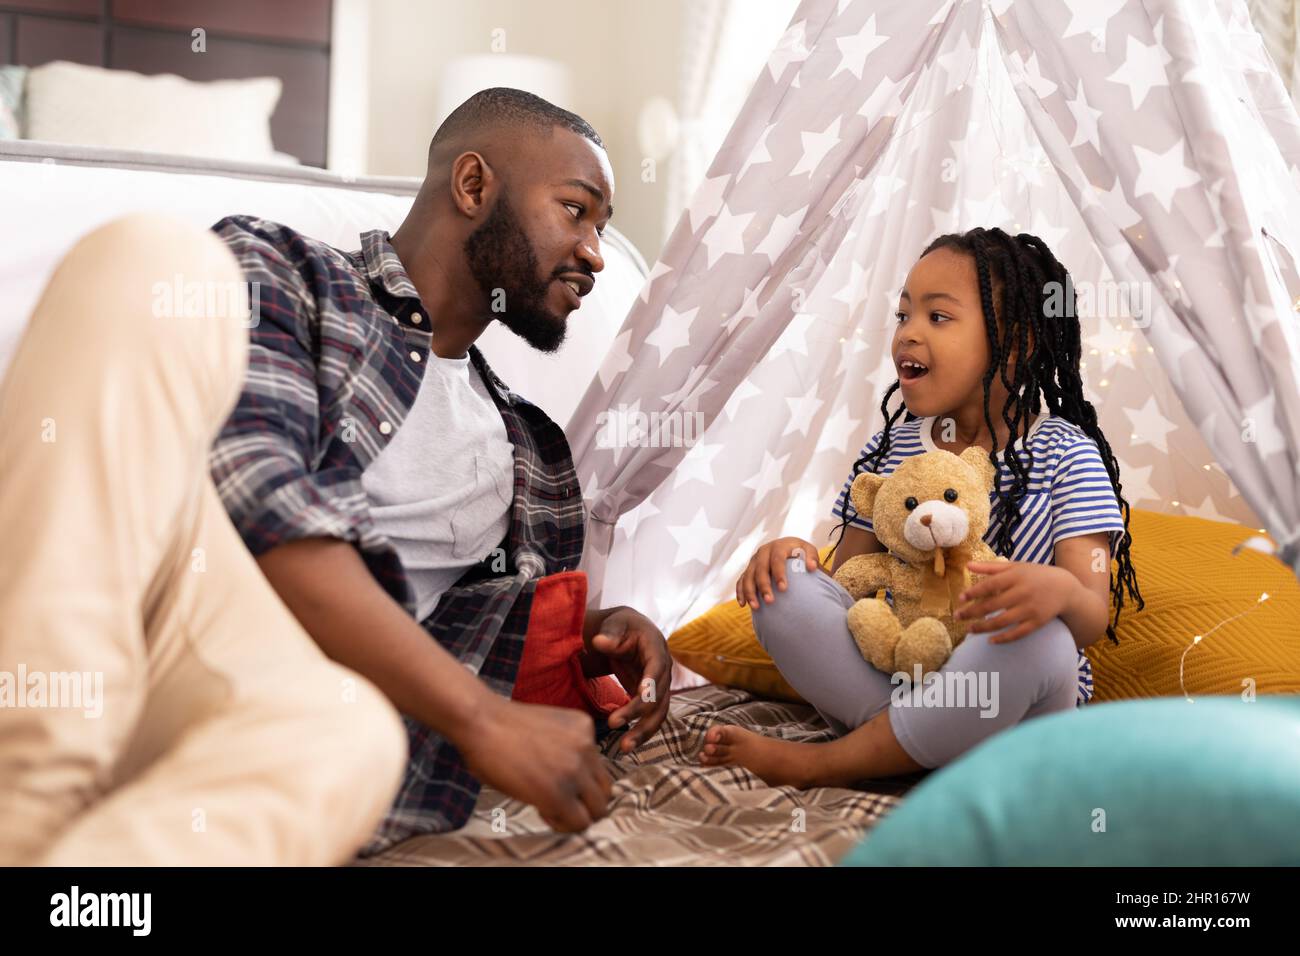 L'uomo afroamericano che parla alla figlia cute seduta con l'orso del teddy nella tenda in casa Foto Stock